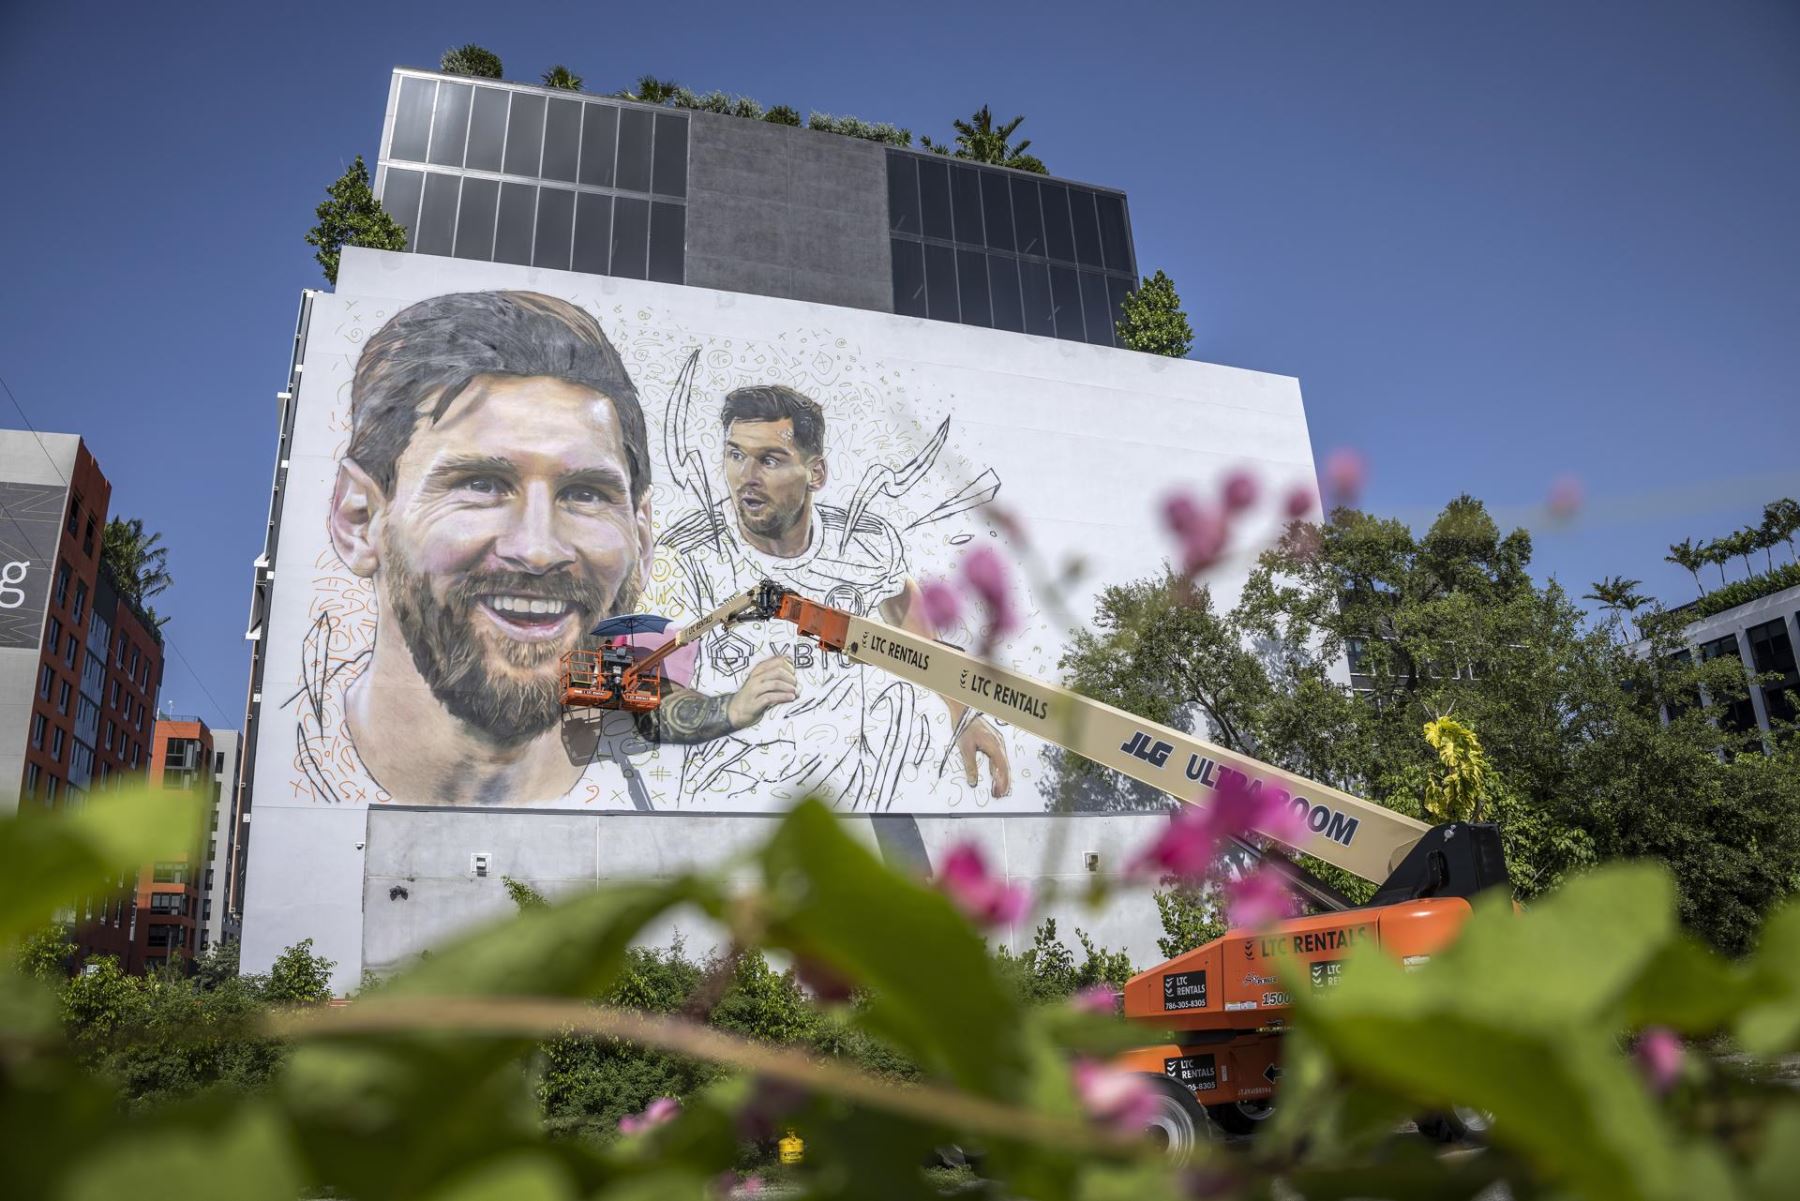 El artista argentino Maximiliano Bagnasco pinta un mural del futbolista compatriota Lionel Messi en un alto muro de siete pisos en Wynwood, Florida, EE.UU.
Foto: EFE